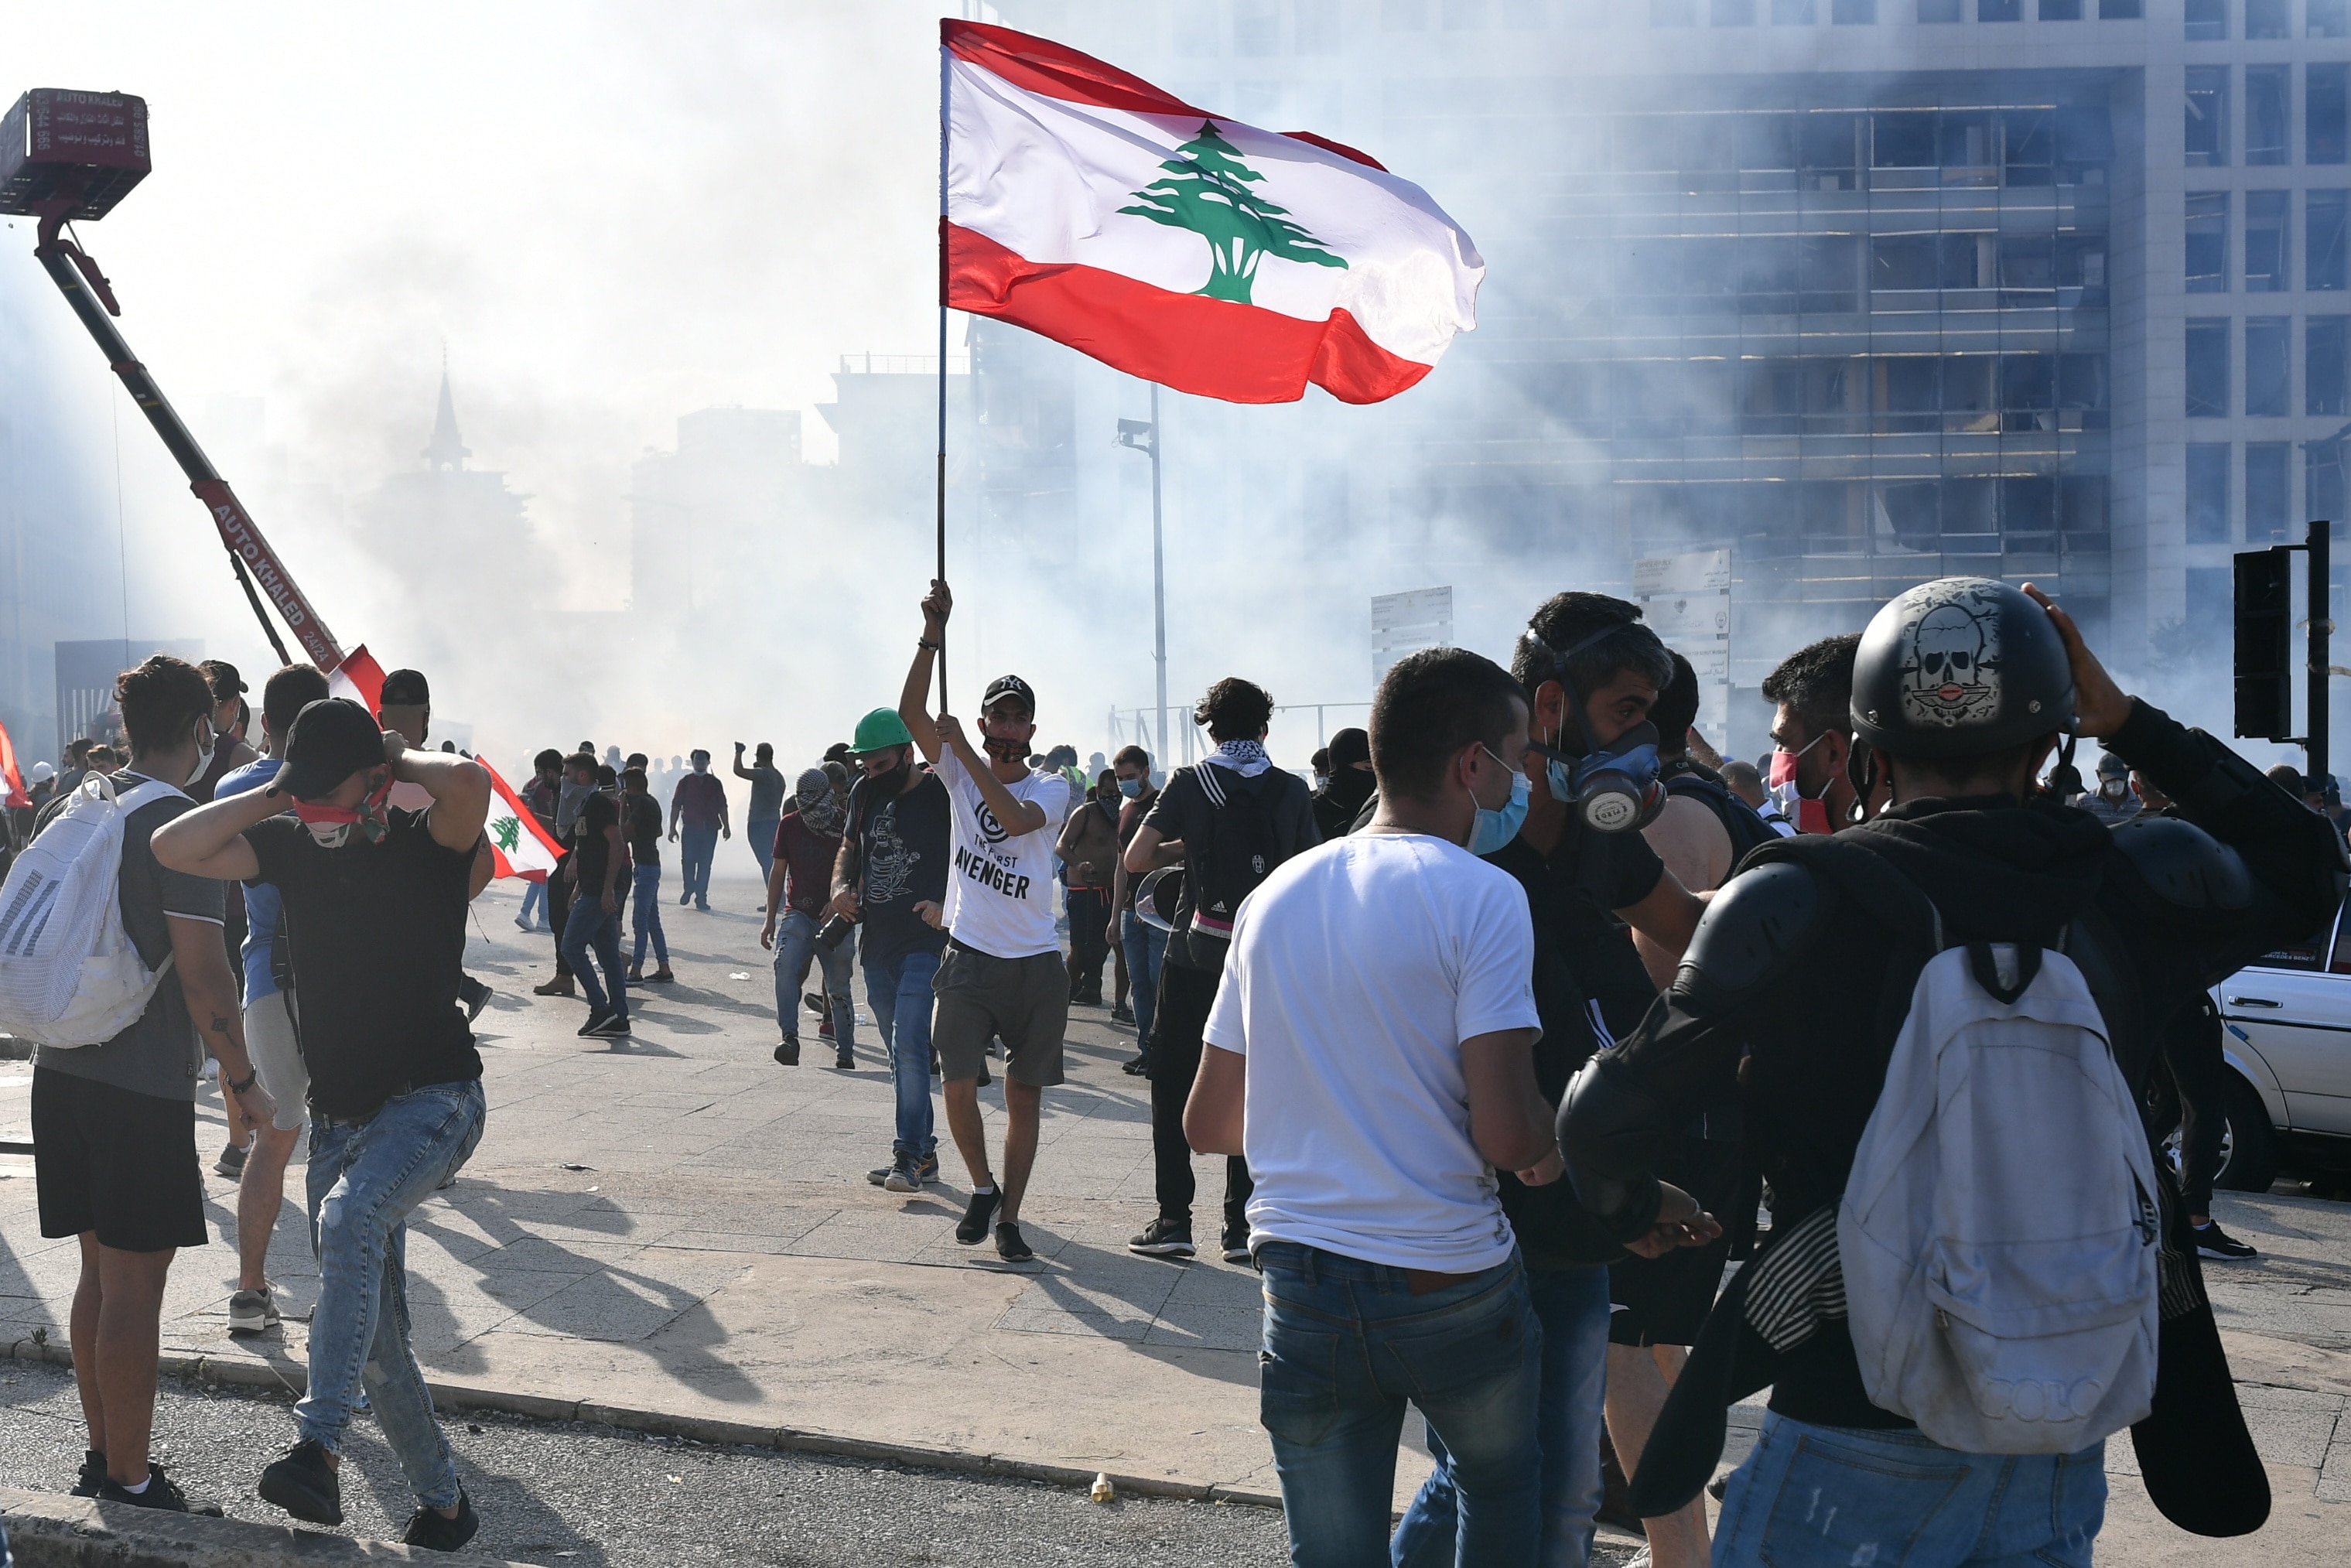 اشخاص يشاركون في احتجاج في بيروت للمطالبة باستقالة الحكومة برئاسة رئيس الوزراء حسان دياب.